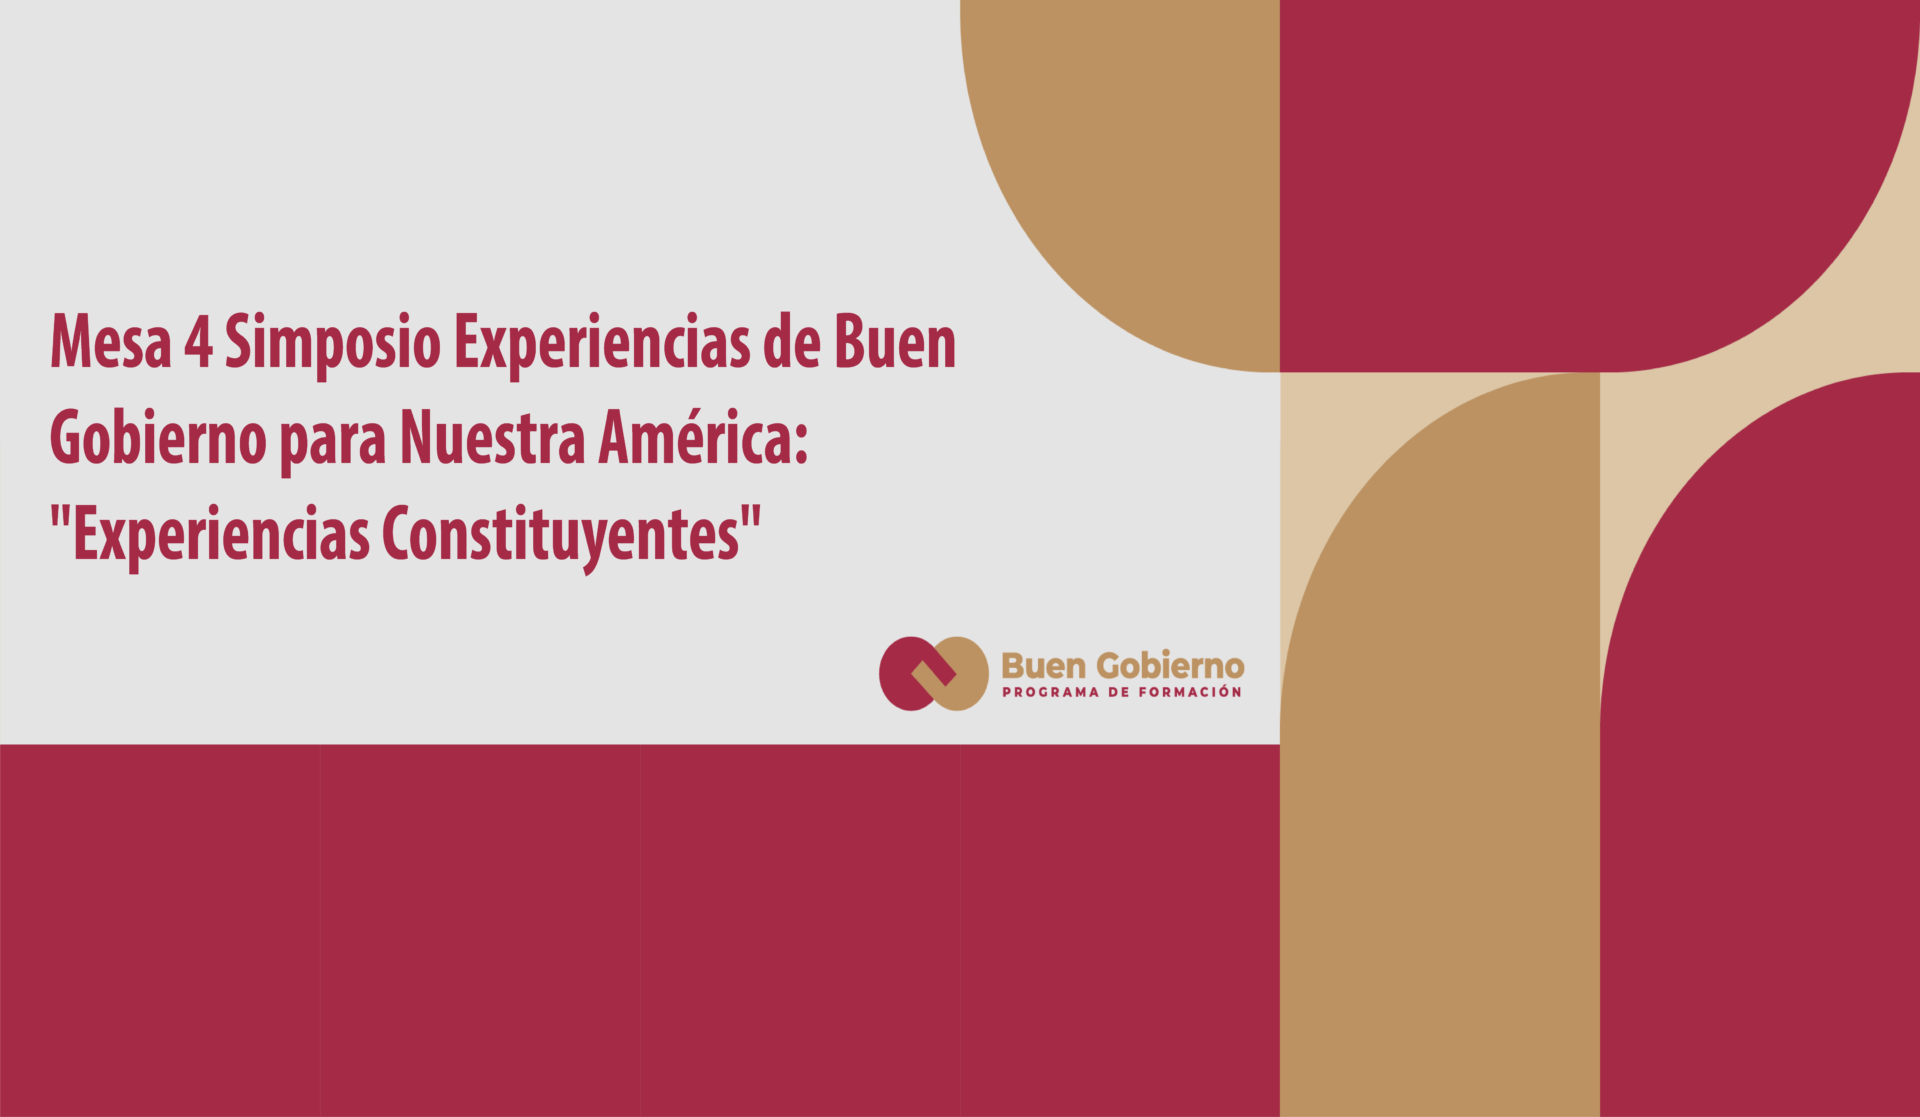 Mesa 4 Simposio Experiencias de Buen Gobierno para Nuestra América: “Experiencias Constituyentes”